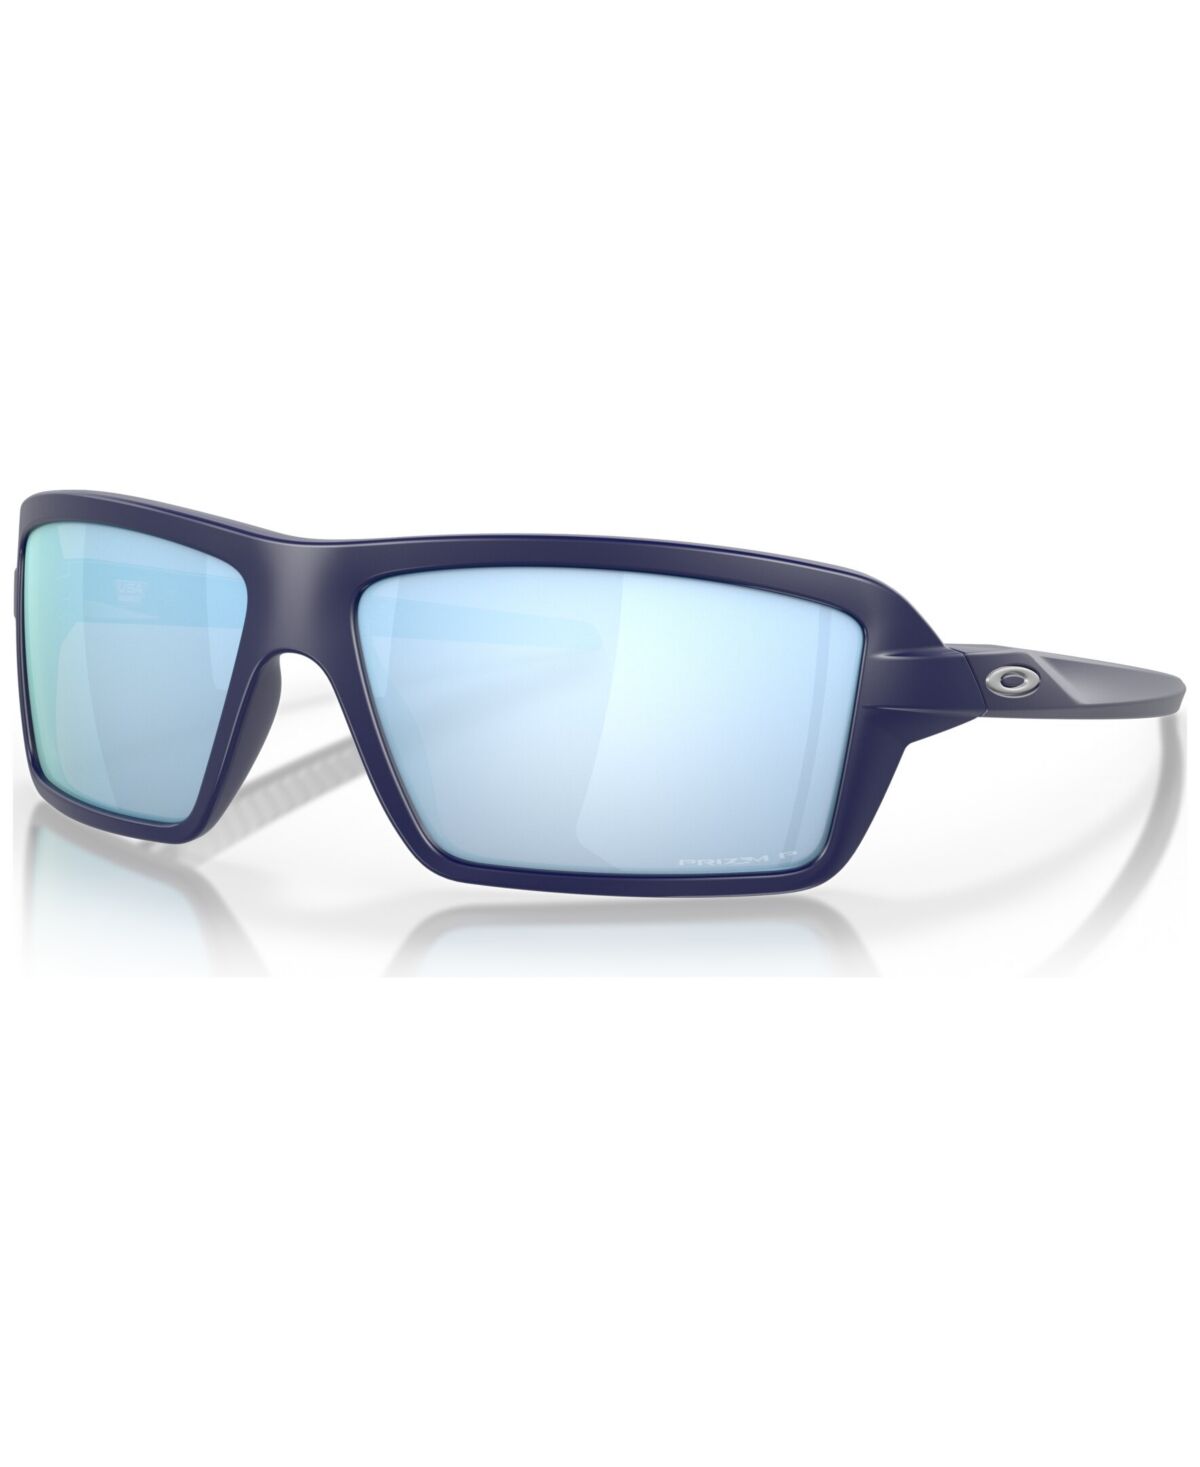 Oakley Men's Polarized Sunglasses, OO9129-1363 - Matte Navy